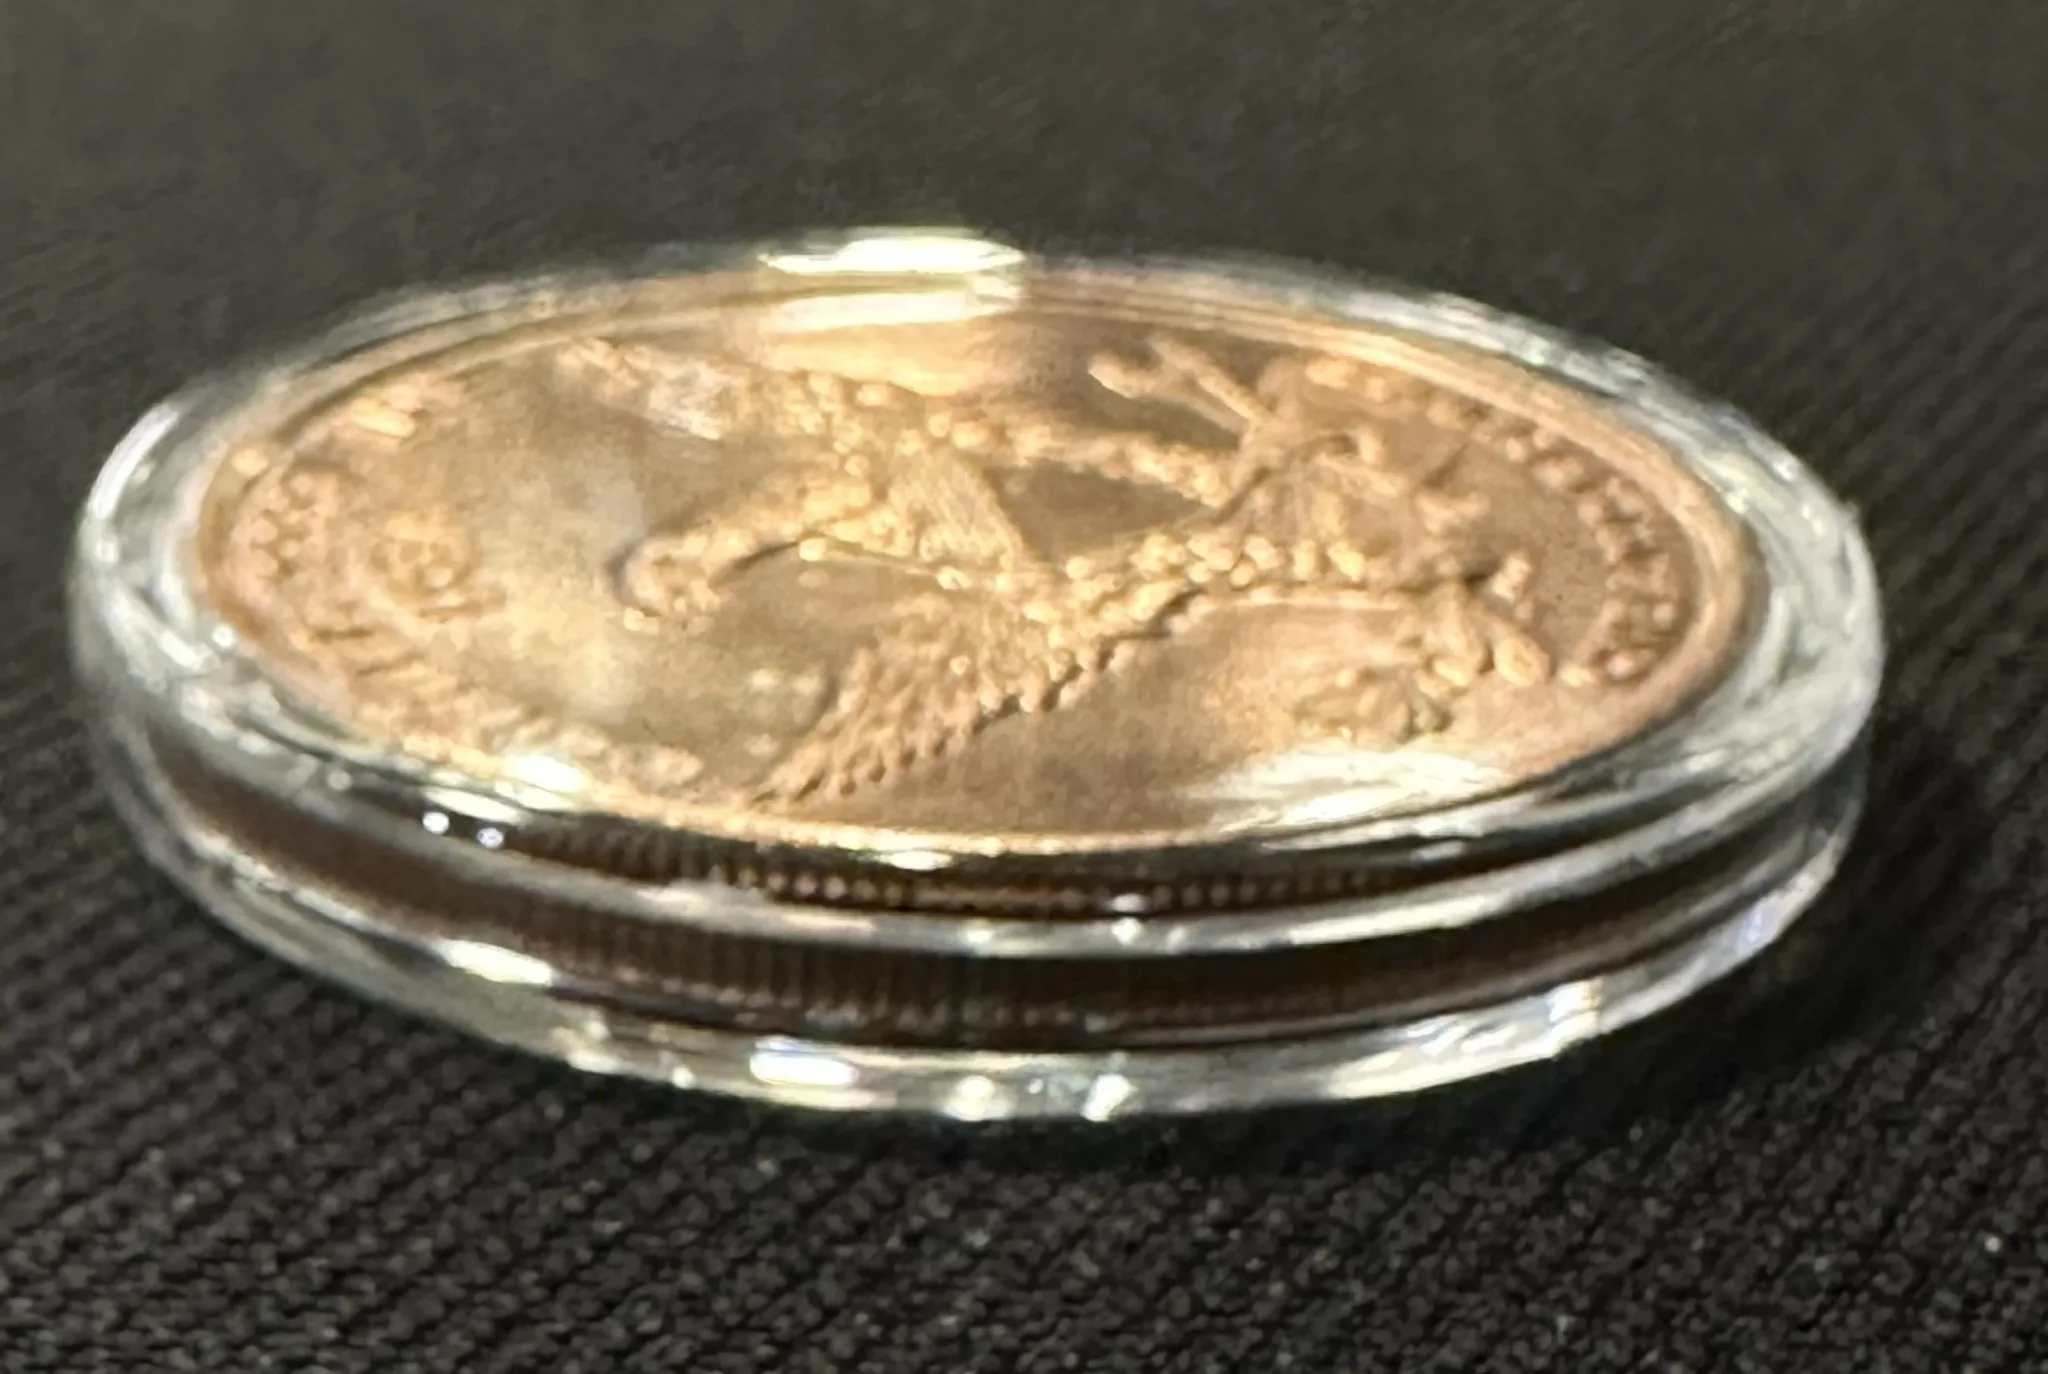 Pteranodon copper coin, 1oz Prehistoric Online